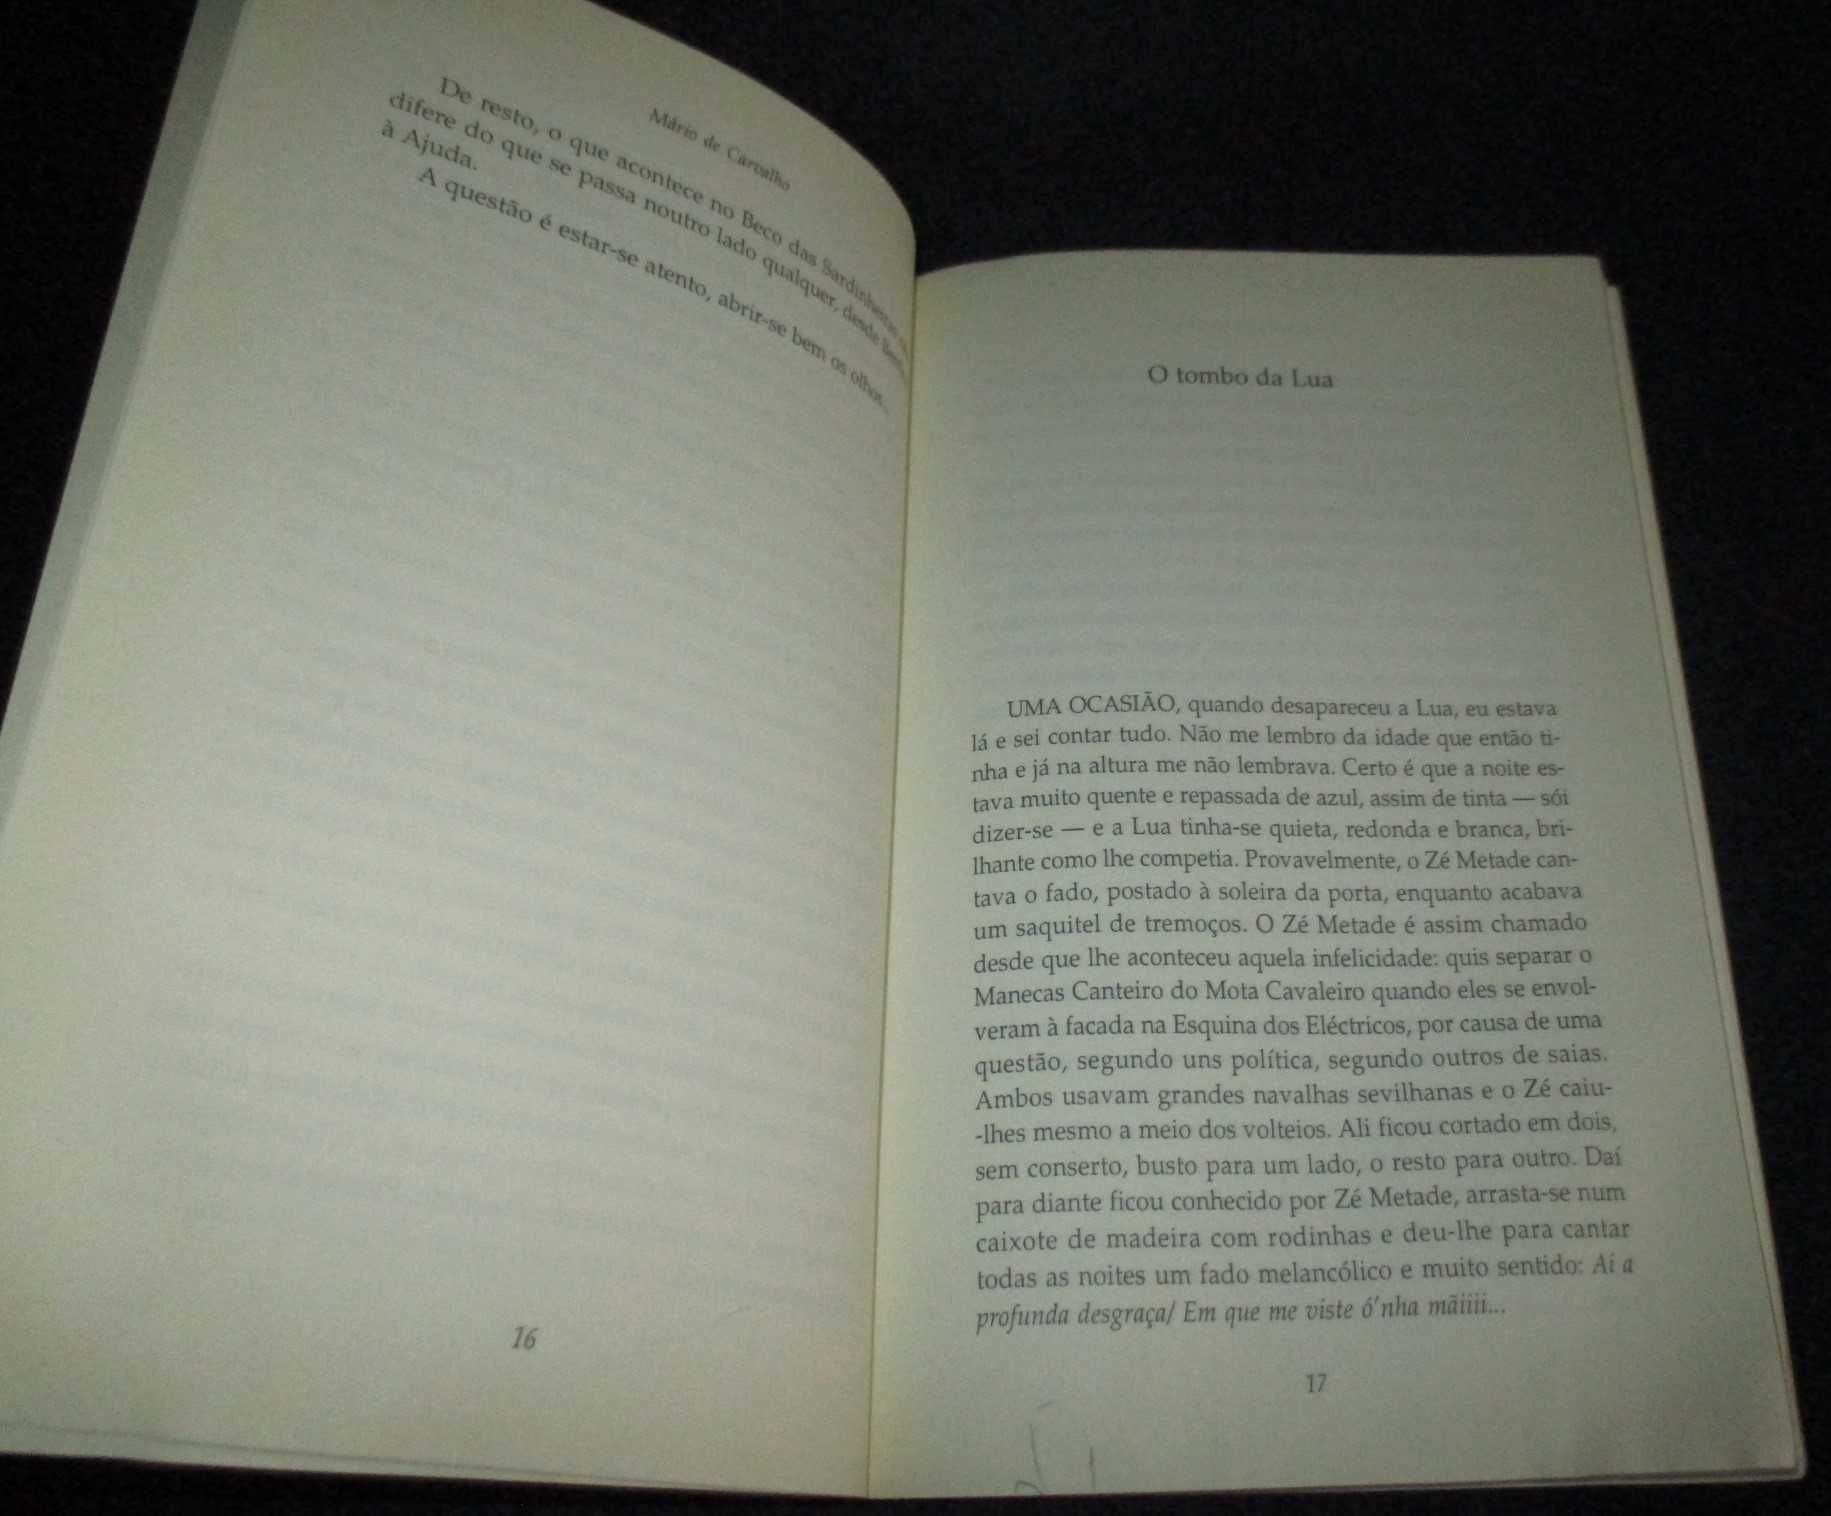 Livro Casos do Beco das Sardinheiras Mário de Carvalho